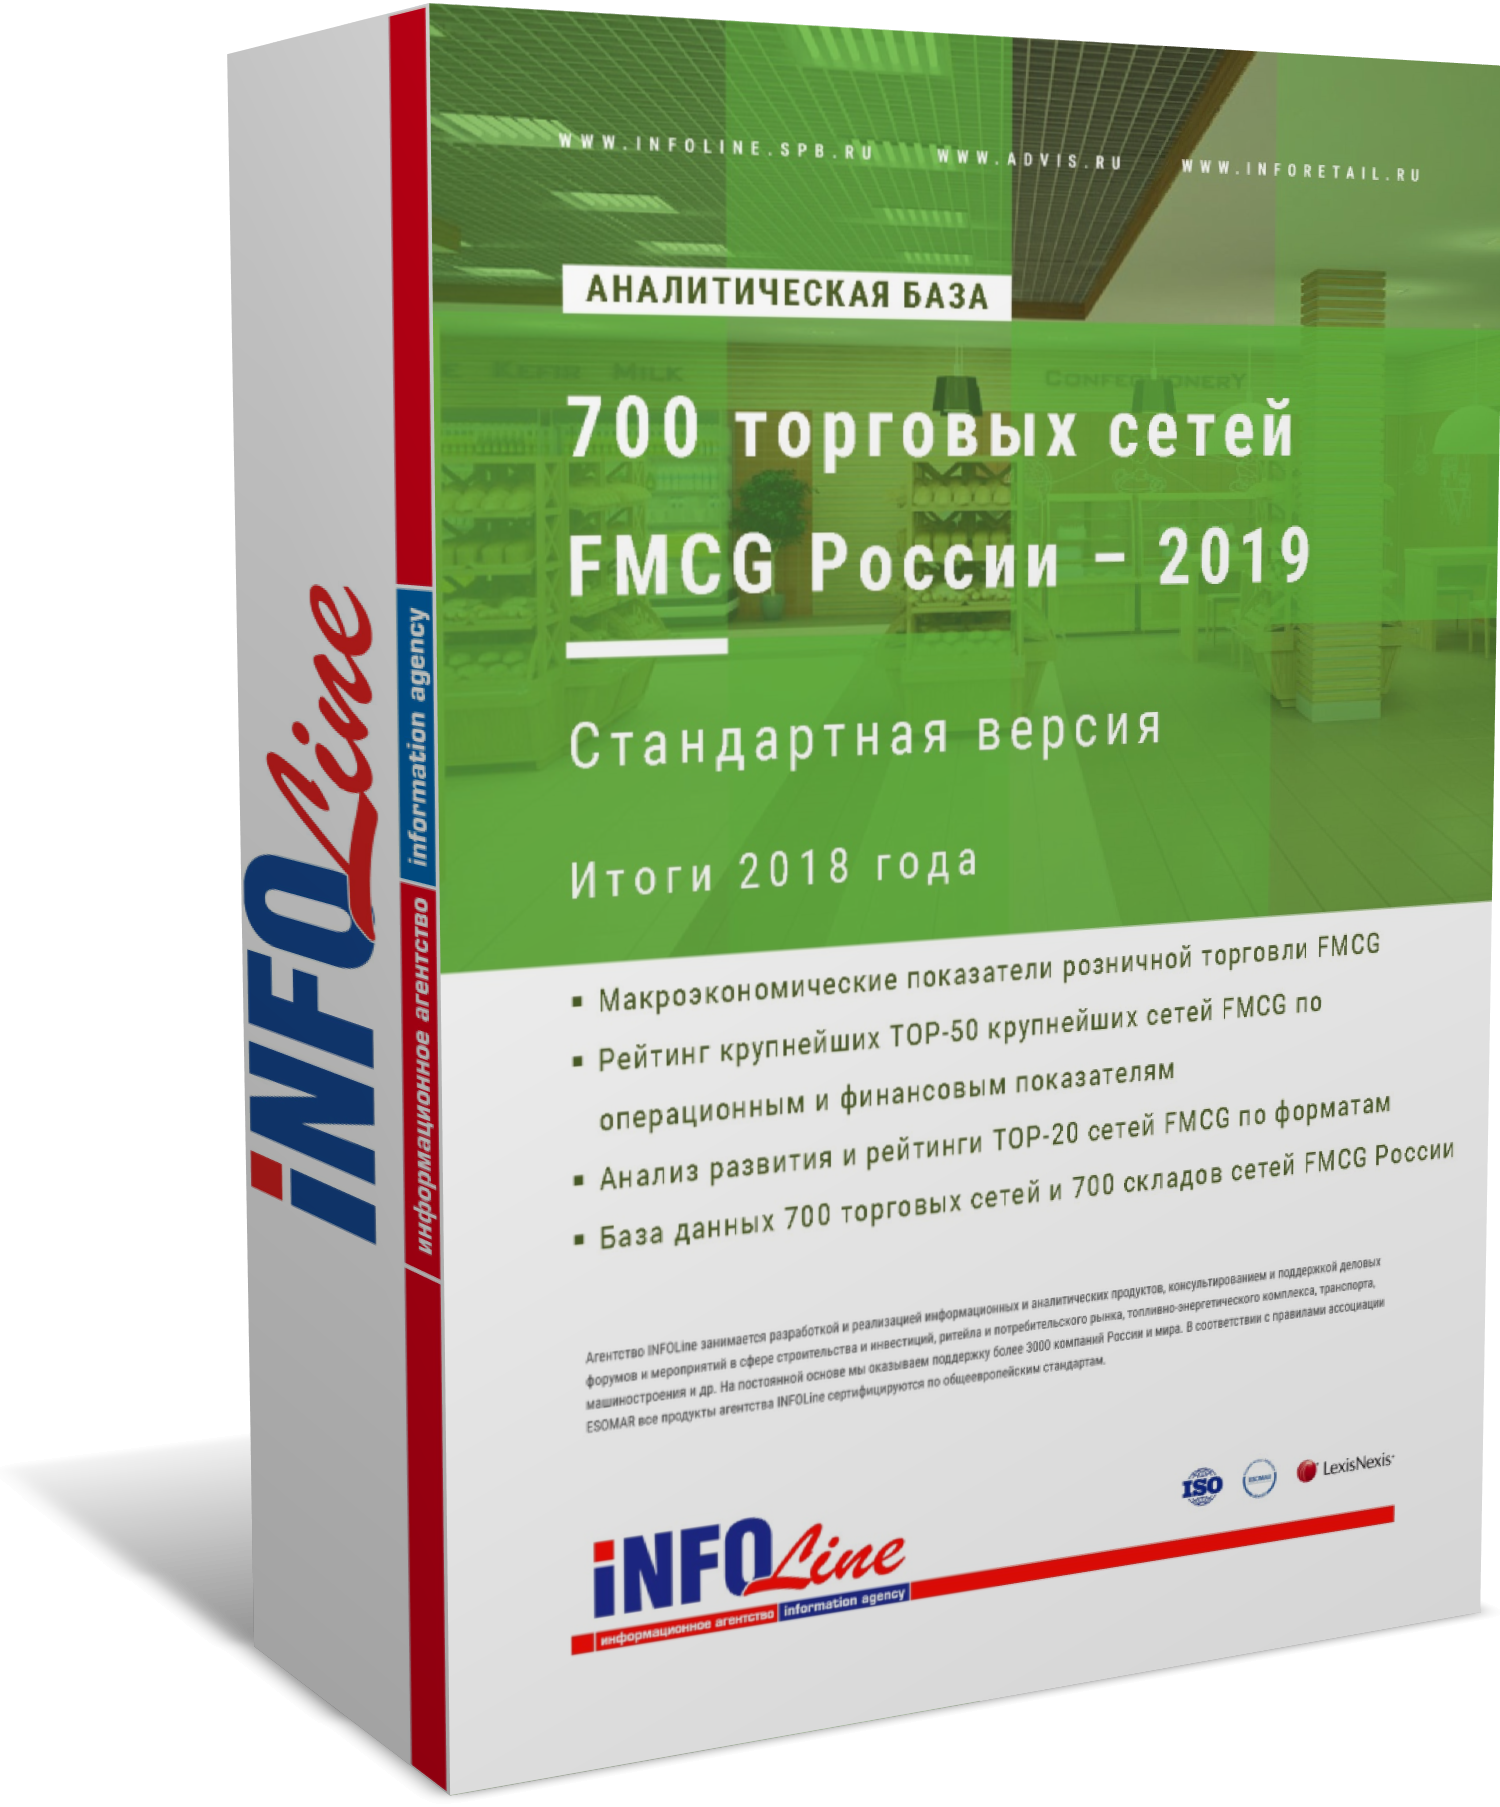 Аналитическая база "700 торговых сетей FMCG России – 2019". Стандартная версия